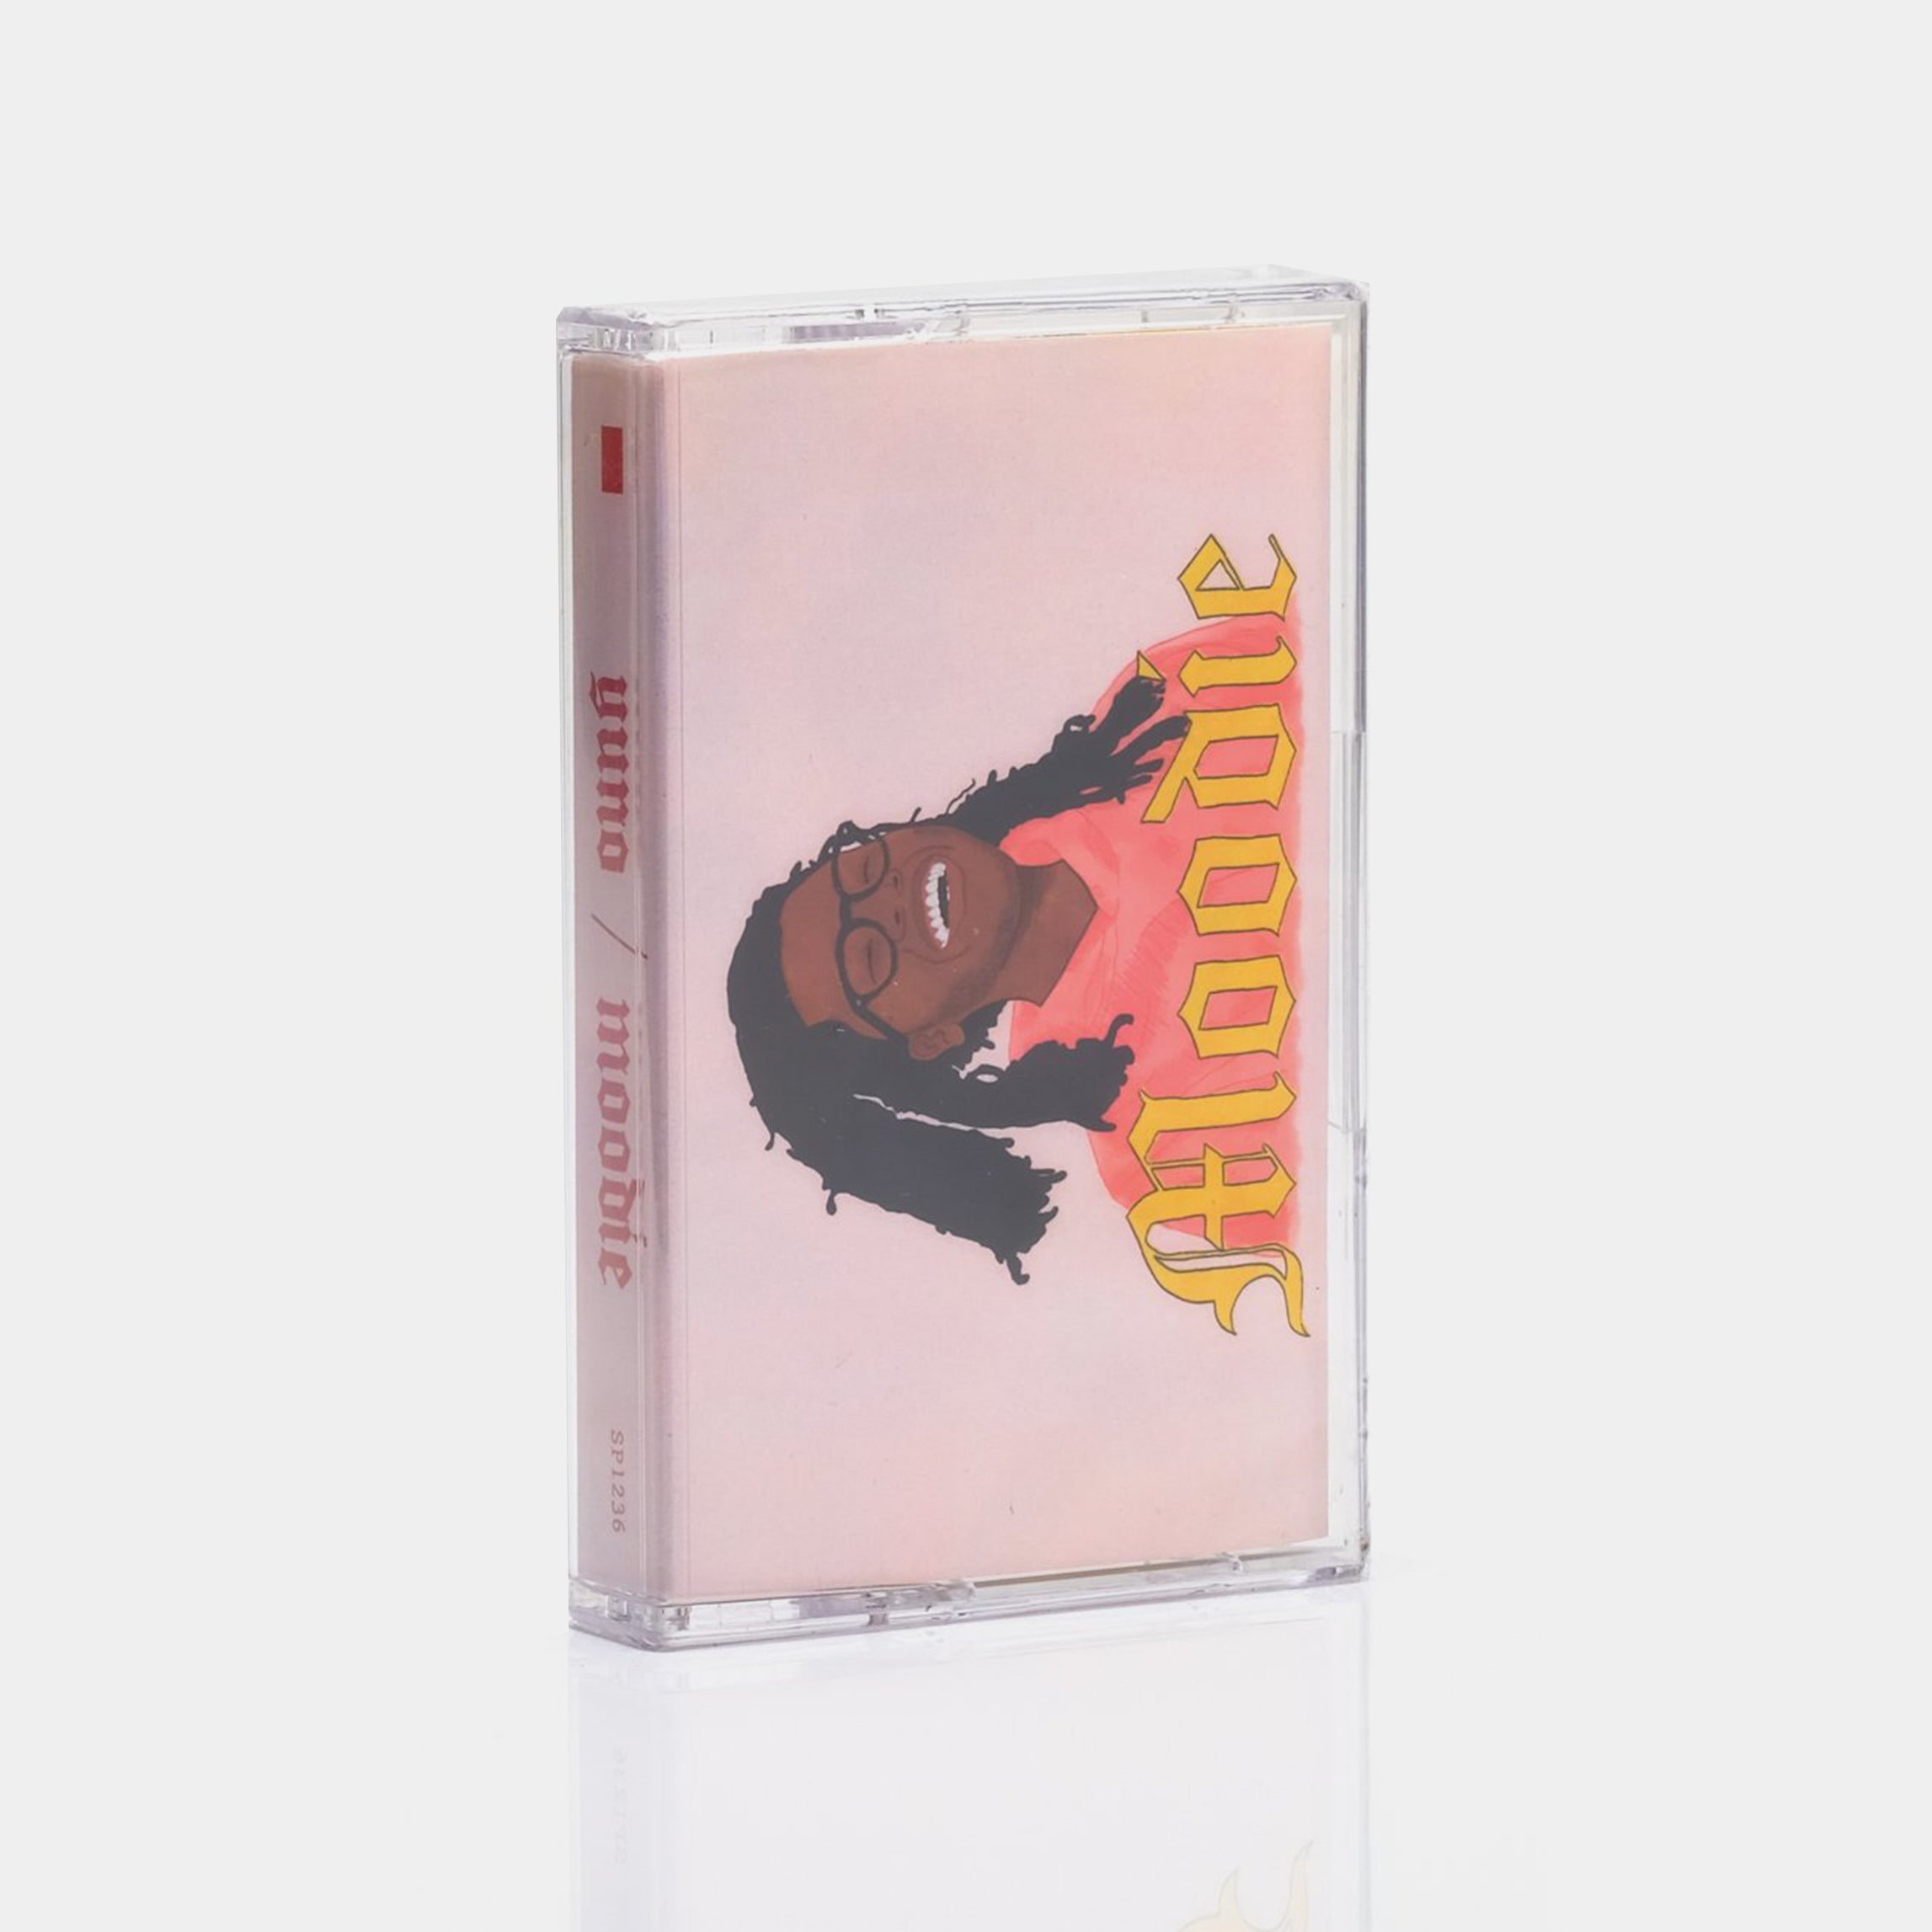 Yuno - Moodie Cassette Tape